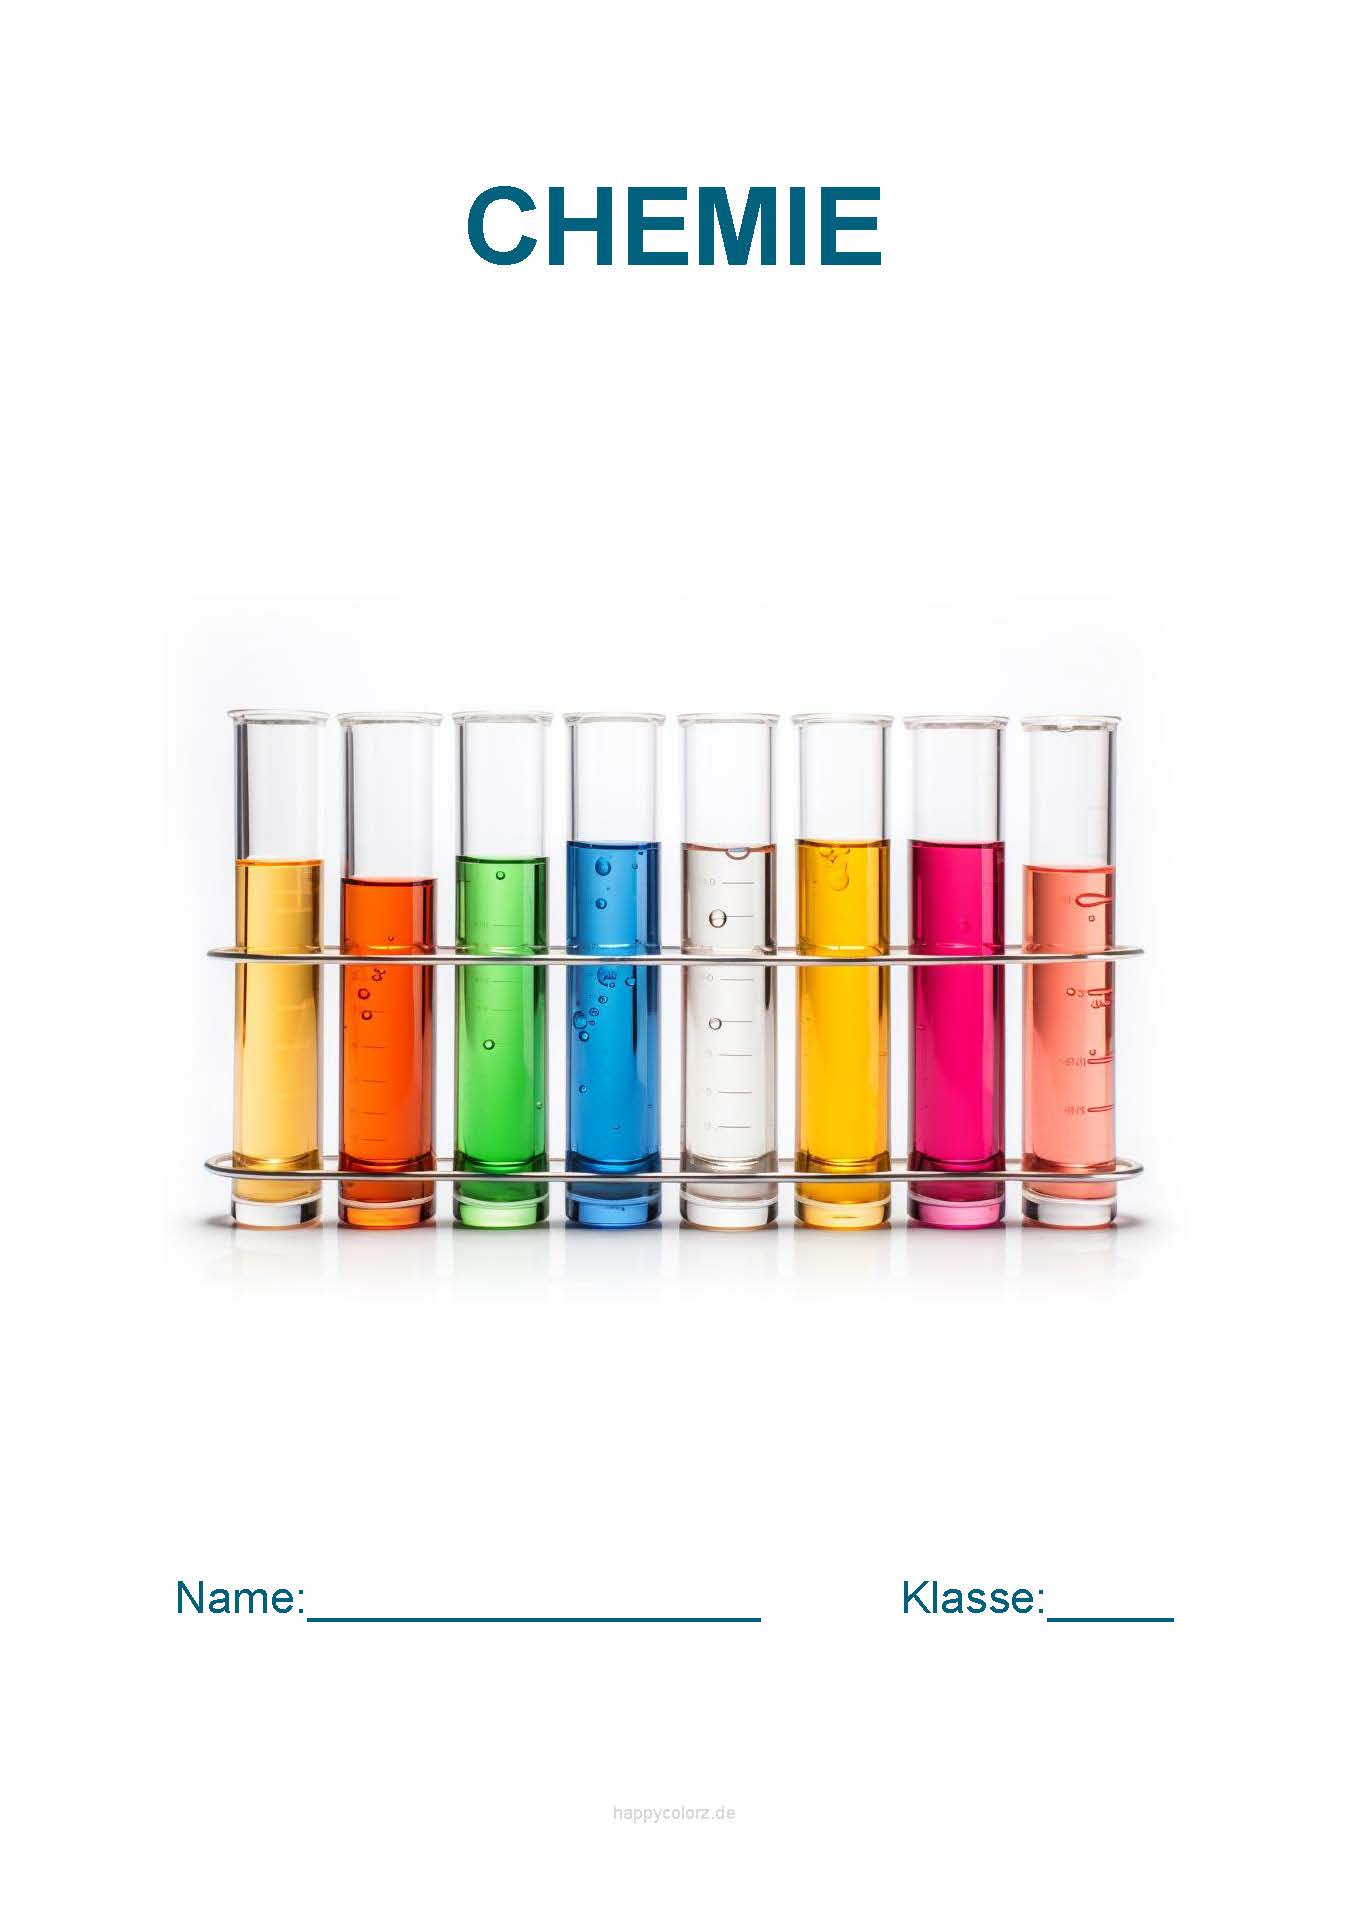 Chemie Deckblatt mit Reagenzgläsern kostenlos ausdrucken (pdf)